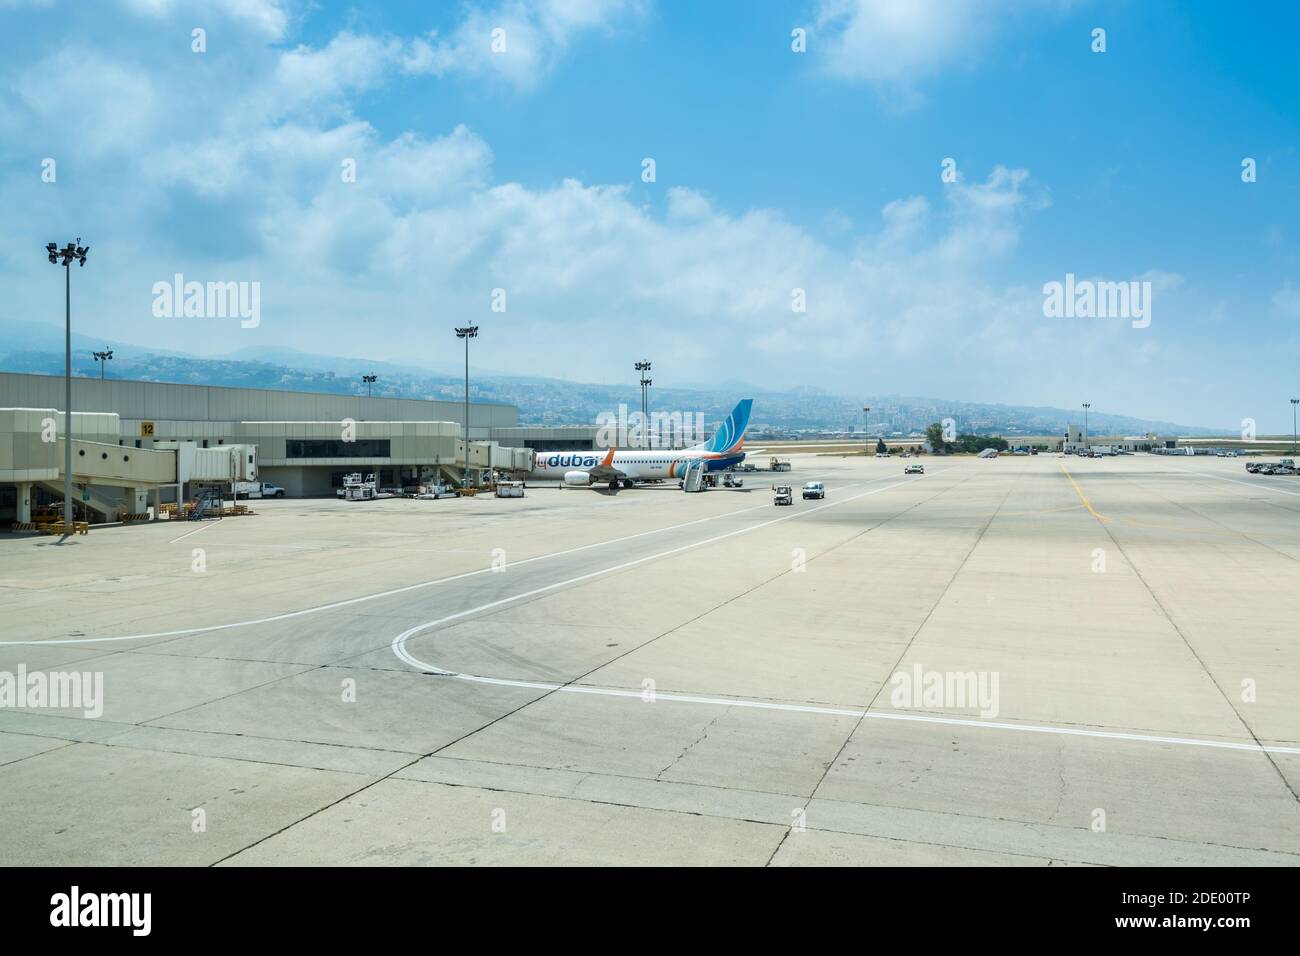 Airplanes at the Beirut Rafic Hariri International Airportof Beirut, Lebanon Stock Photo